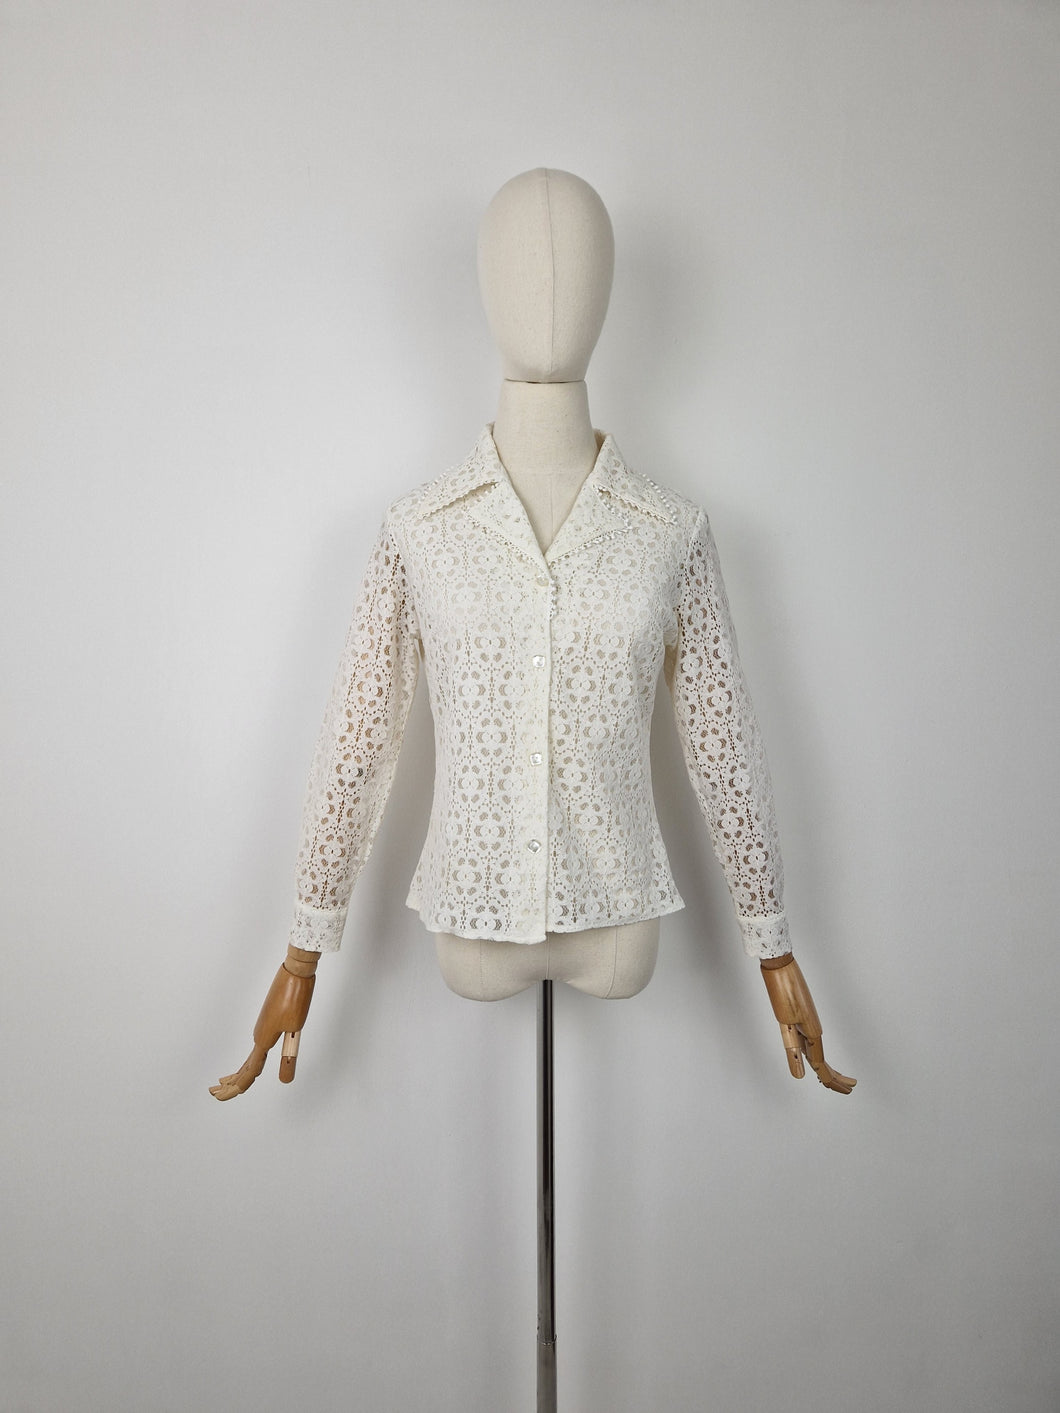 Vintage 60s lace blouse